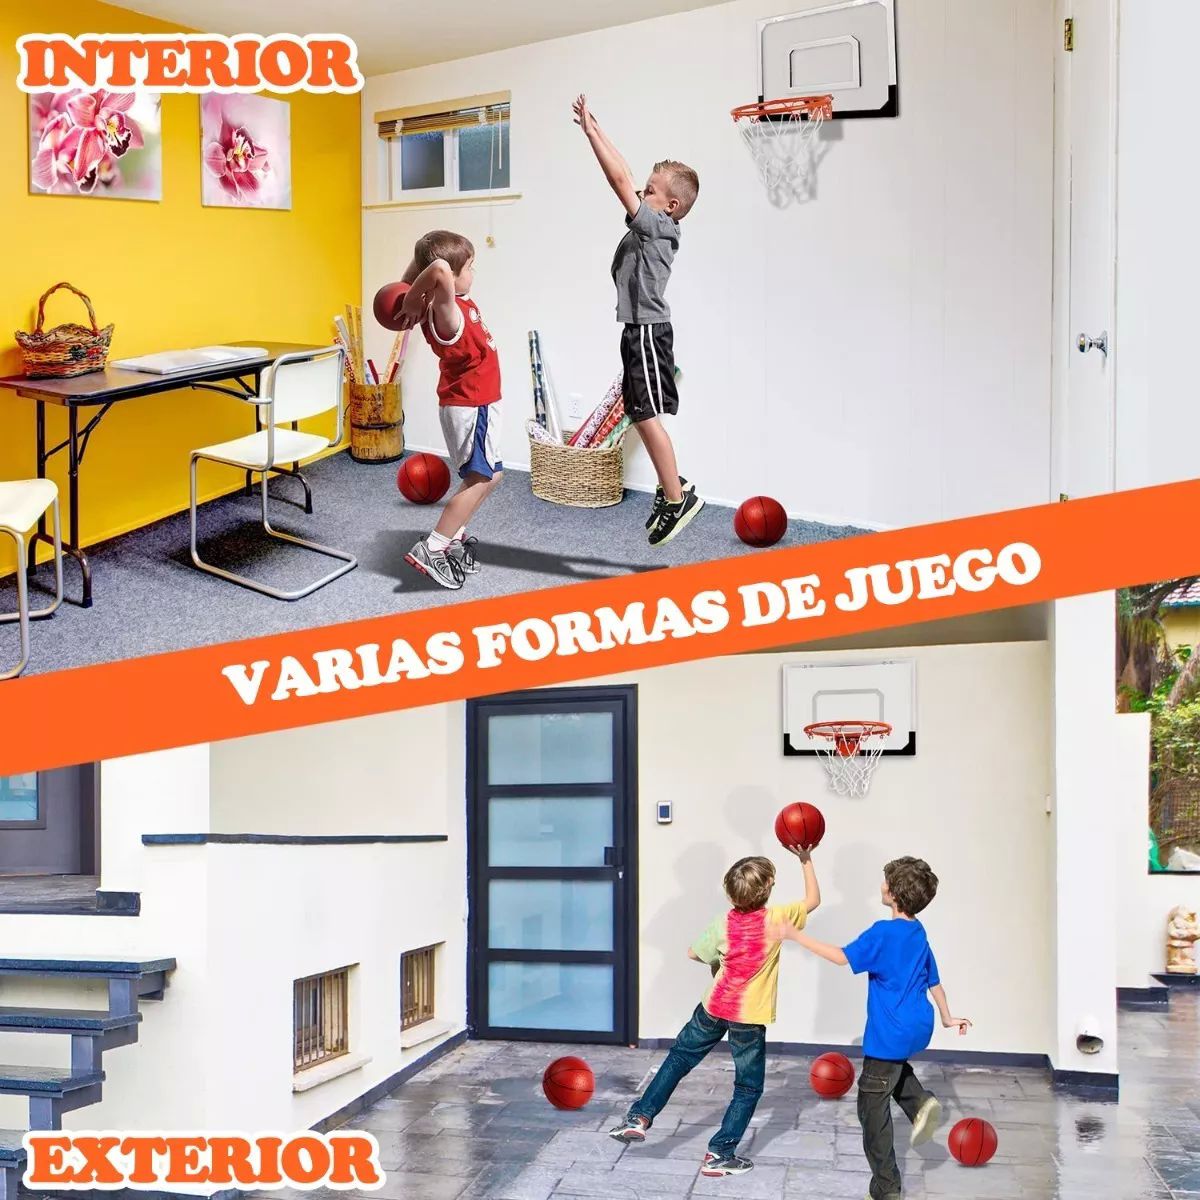 Canasta Tablero Básquetbol Baloncesto Infantil para Niños Juguetes